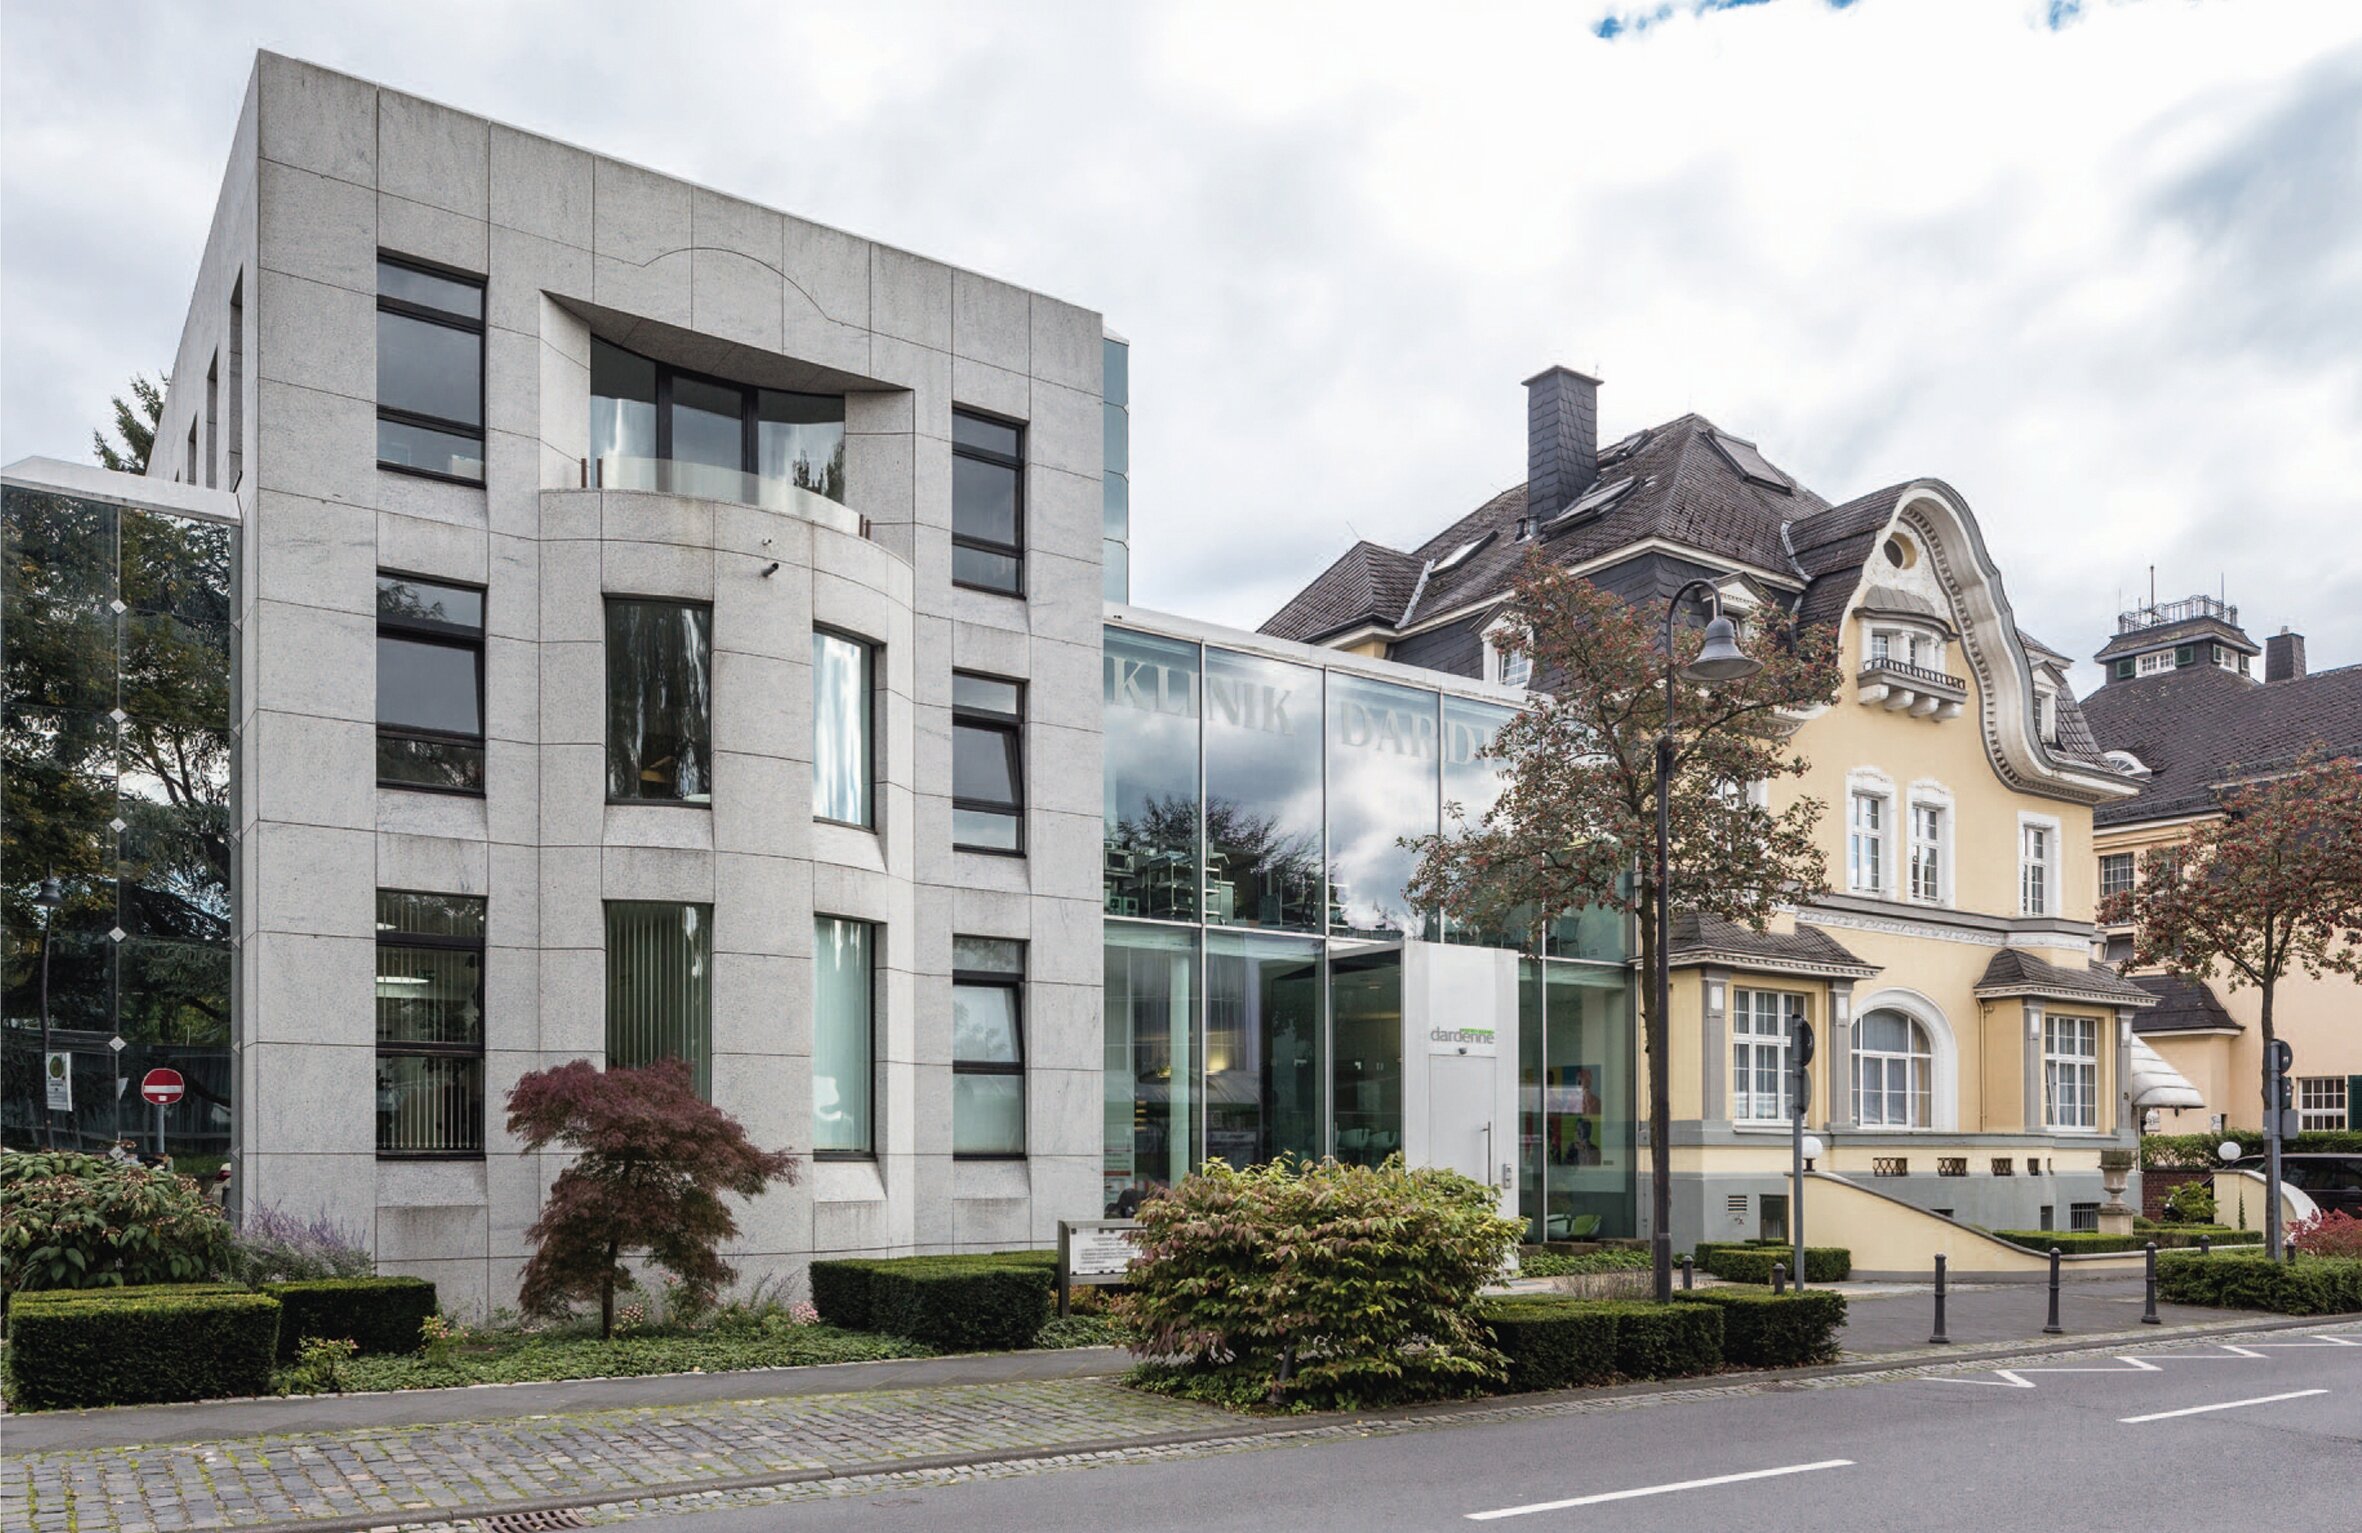 Clinic building Dardenne in Bonn, Germany